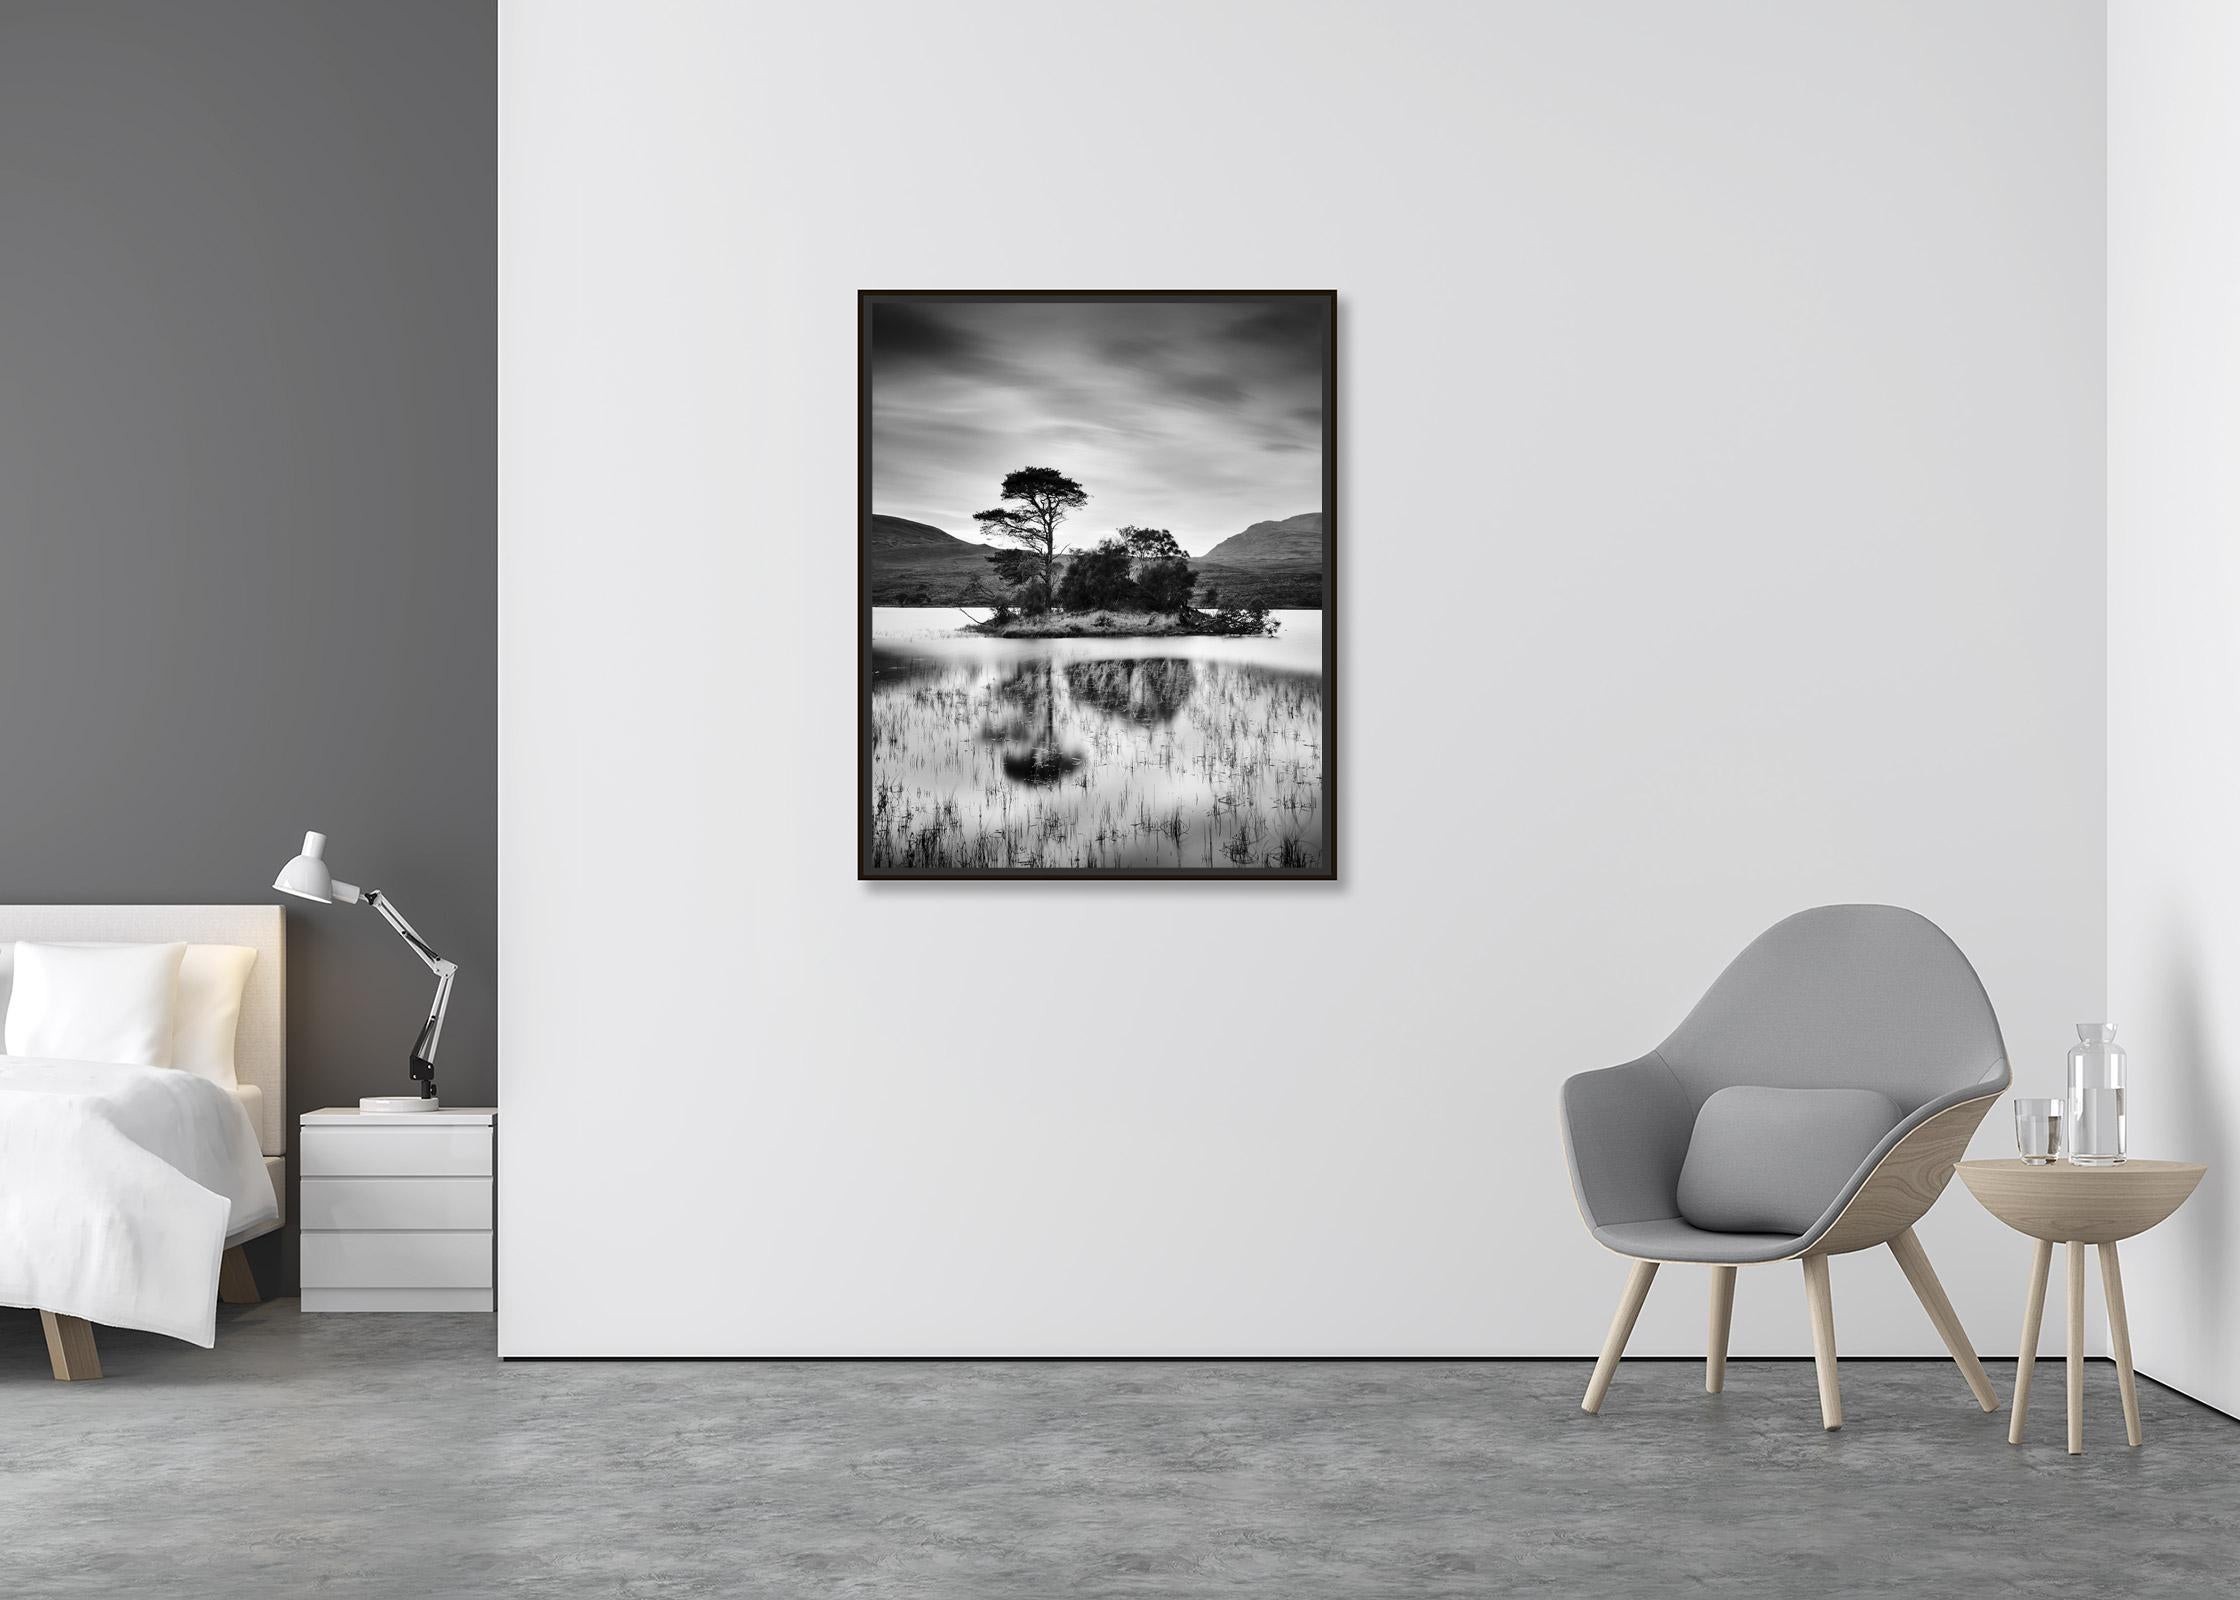 Nach dem Sonnenuntergang, Baum, Insel, Schottland, Schwarz-Weiß-Landschaftsfotografie (Zeitgenössisch), Photograph, von Gerald Berghammer